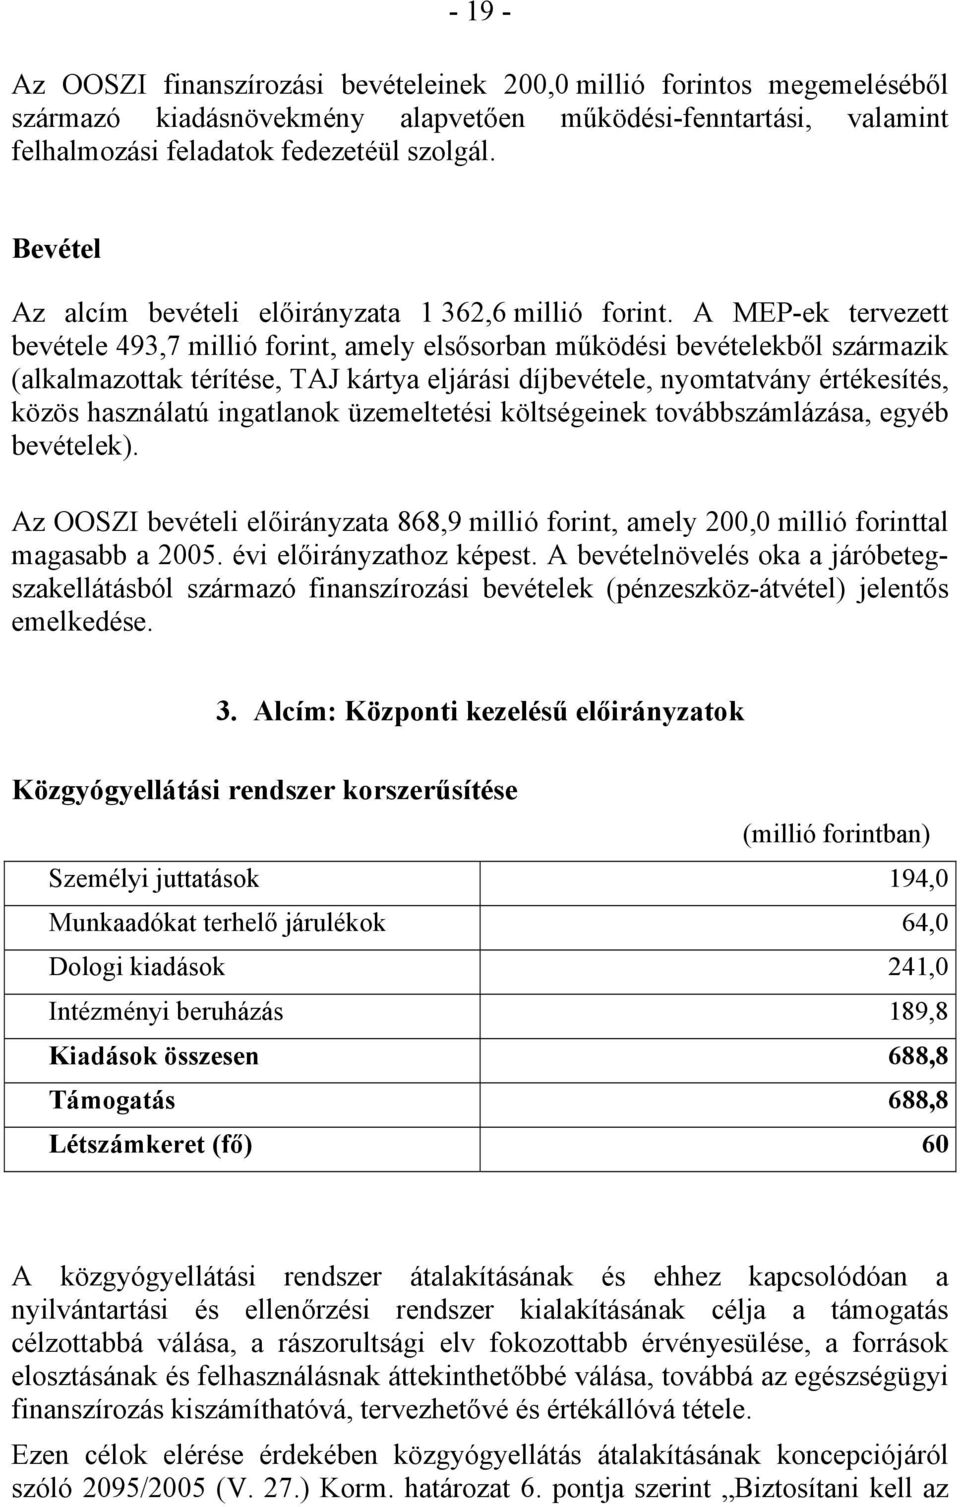 A MEP-ek tervezett bevétele 493,7 millió forint, amely elsősorban működési bevételekből származik (alkalmazottak térítése, TAJ kártya eljárási díjbevétele, nyomtatvány értékesítés, közös használatú